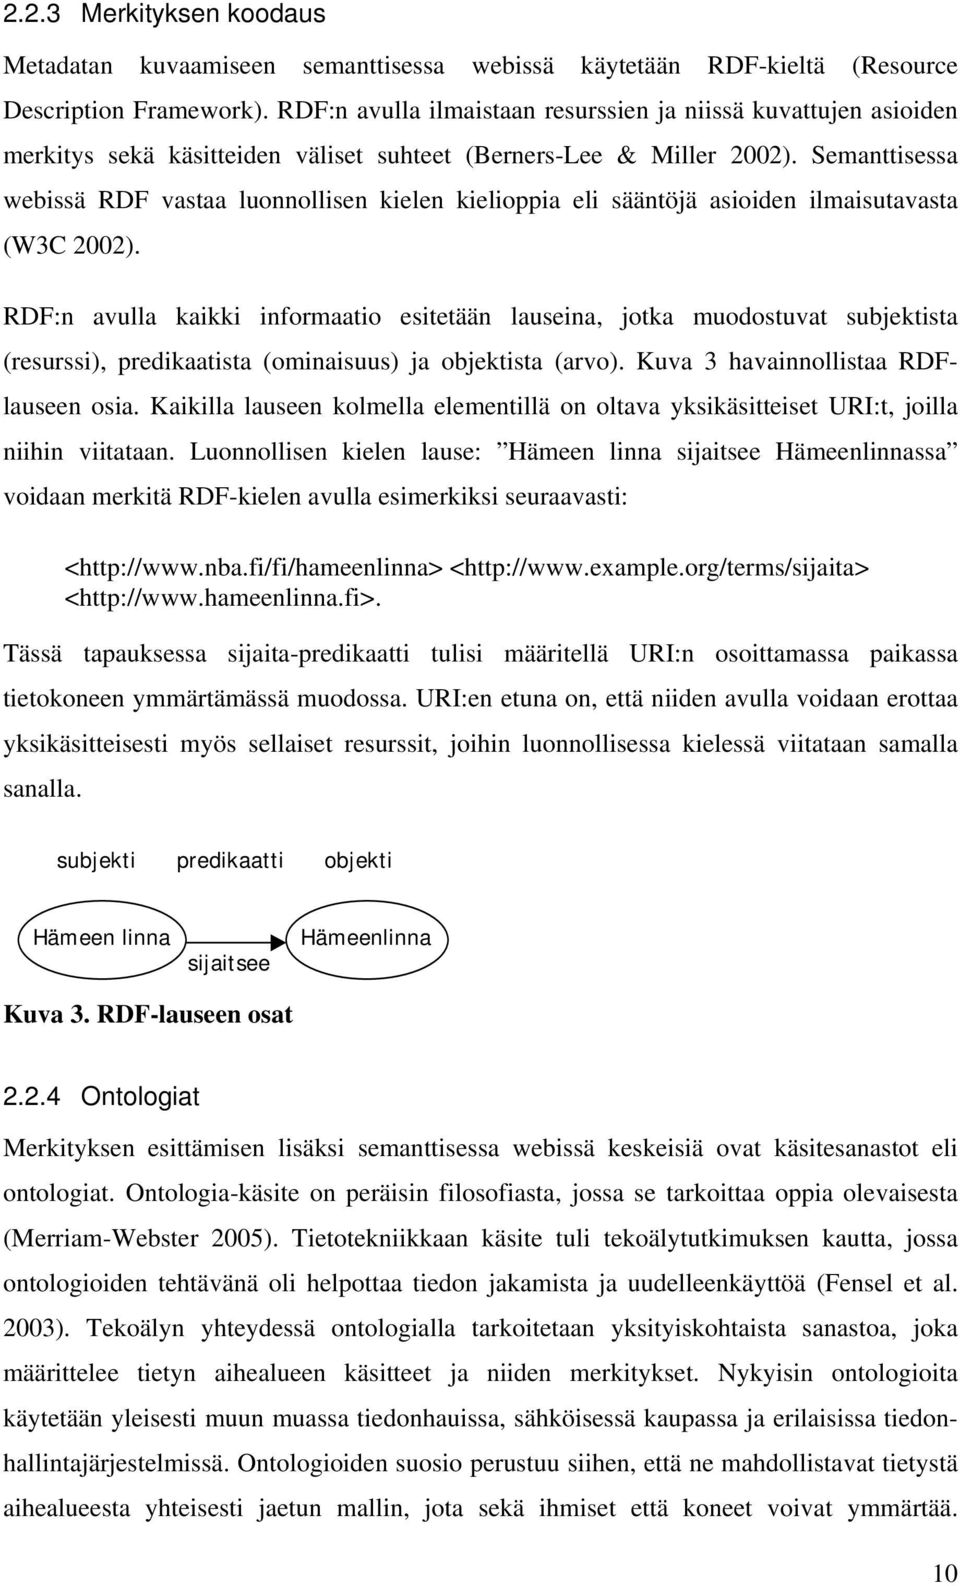 Semanttisessa webissä RDF vastaa luonnollisen kielen kielioppia eli sääntöjä asioiden ilmaisutavasta (W3C 2002).